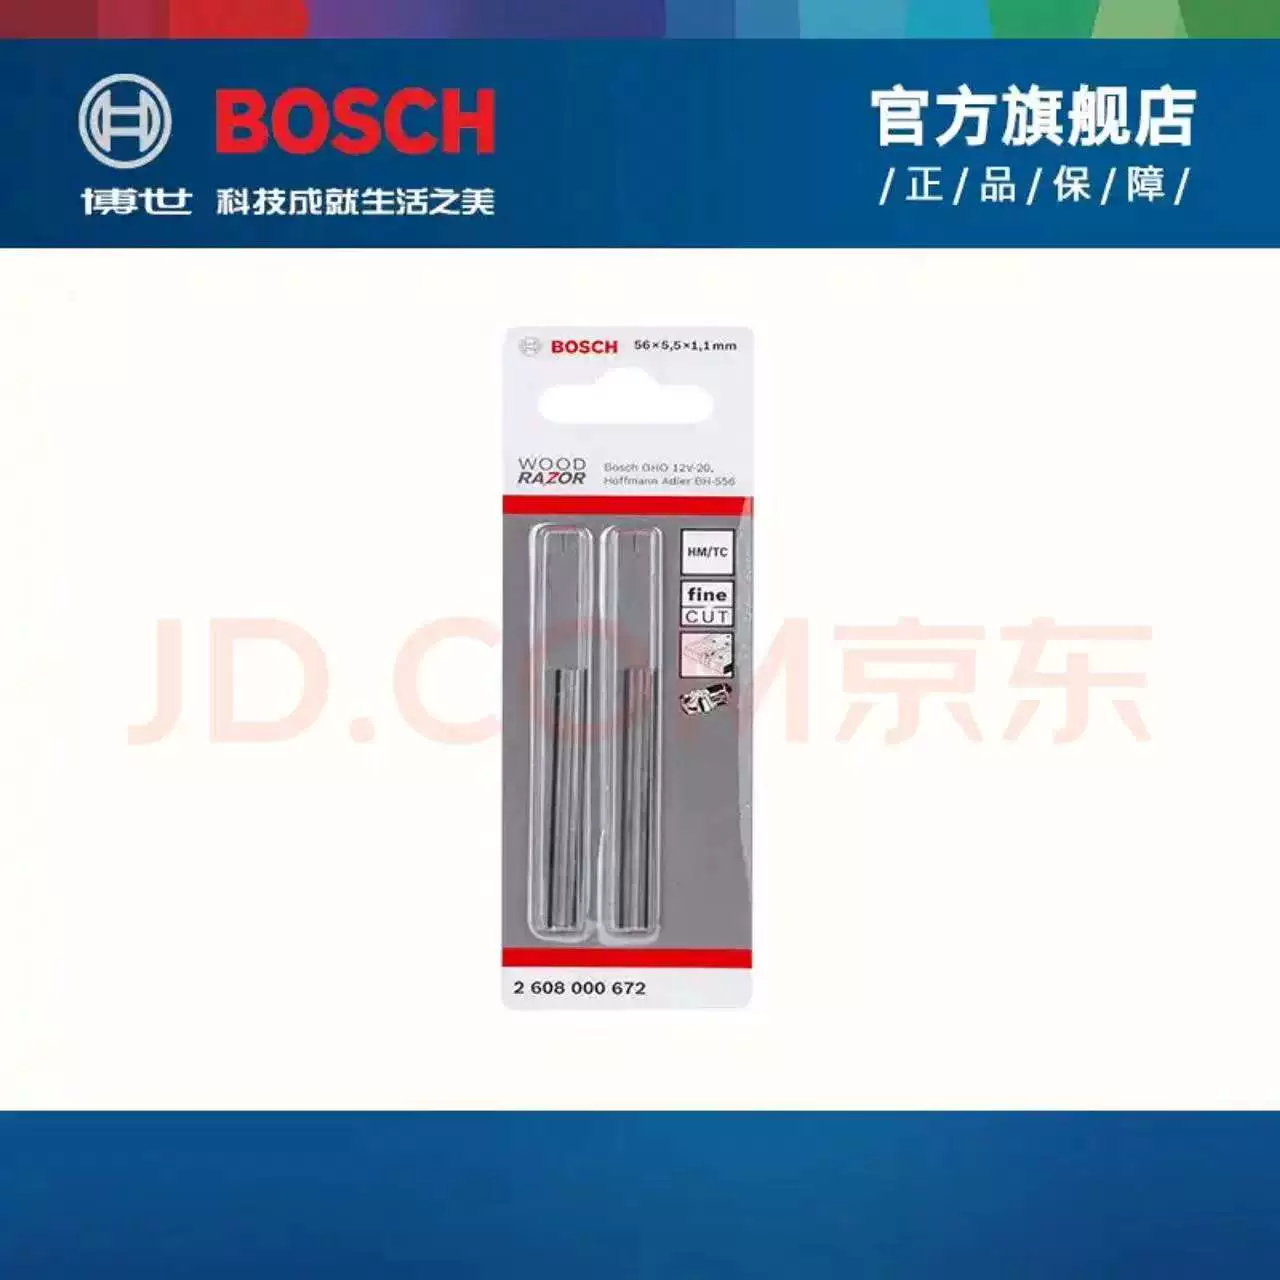 máy bào gỗ mini Bosch Bosch GHO 12V-20 pin lithium mini không chổi than máy bào gỗ nhỏ sạc 12V sản xuất tại Hungary máy bào makita m1901b máy bào tay Máy bào gỗ